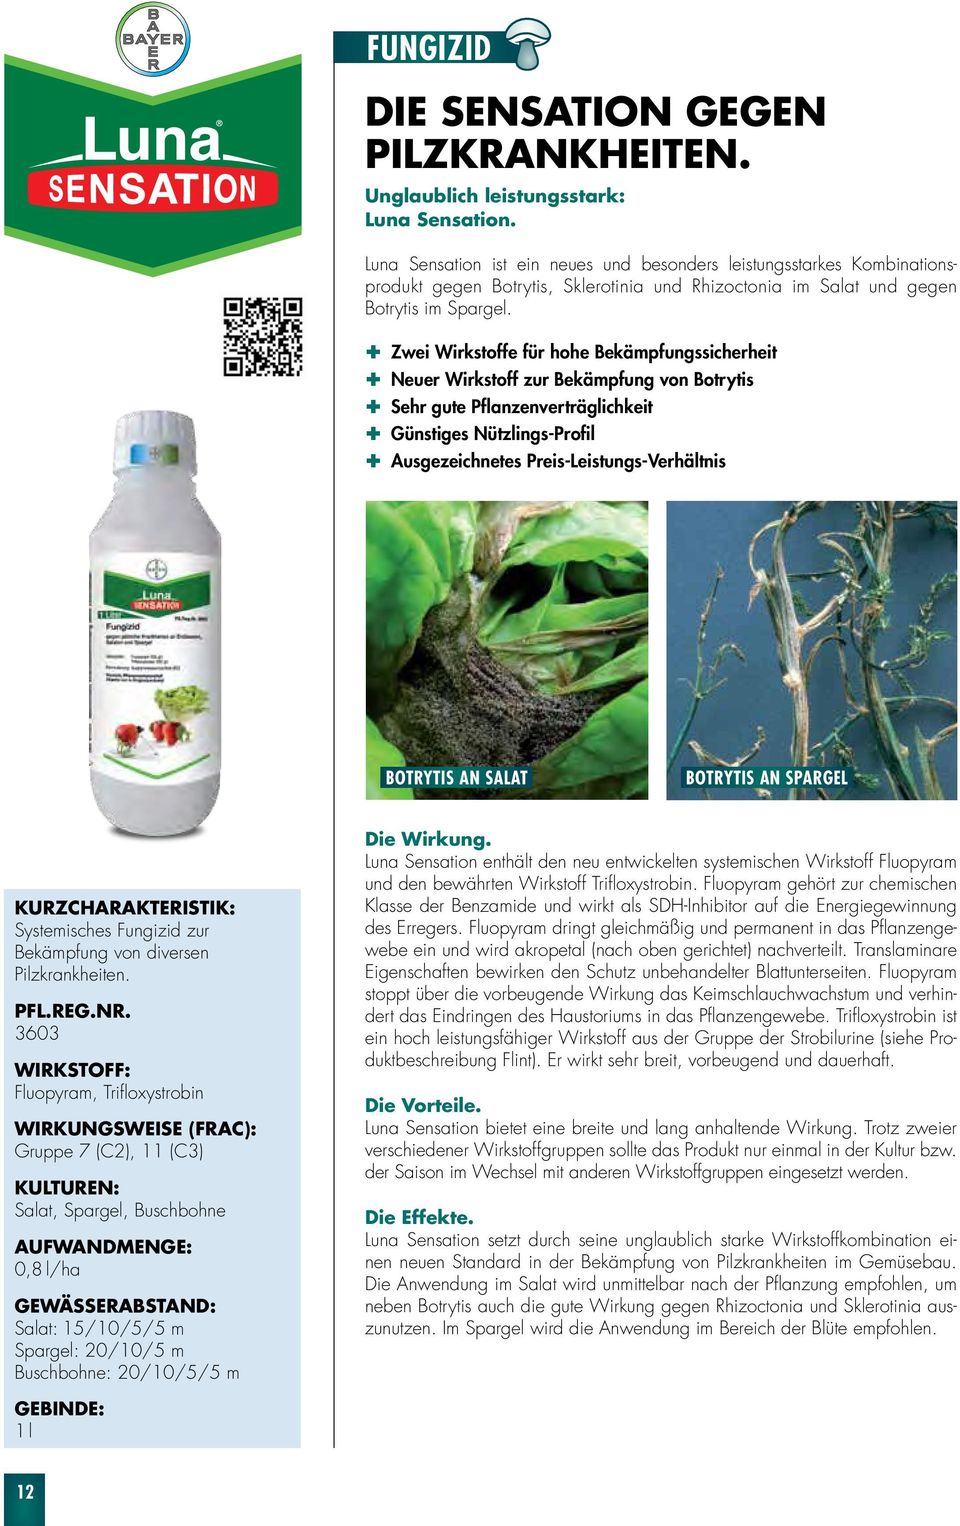 Zwei Wirkstoffe für hohe Bekämpfungssicherheit euer Wirkstoff zur Bekämpfung von Botrytis Sehr gute Pflanzenverträglichkeit Günstiges ützlings-profil Ausgezeichnetes Preis-Leistungs-Verhältnis